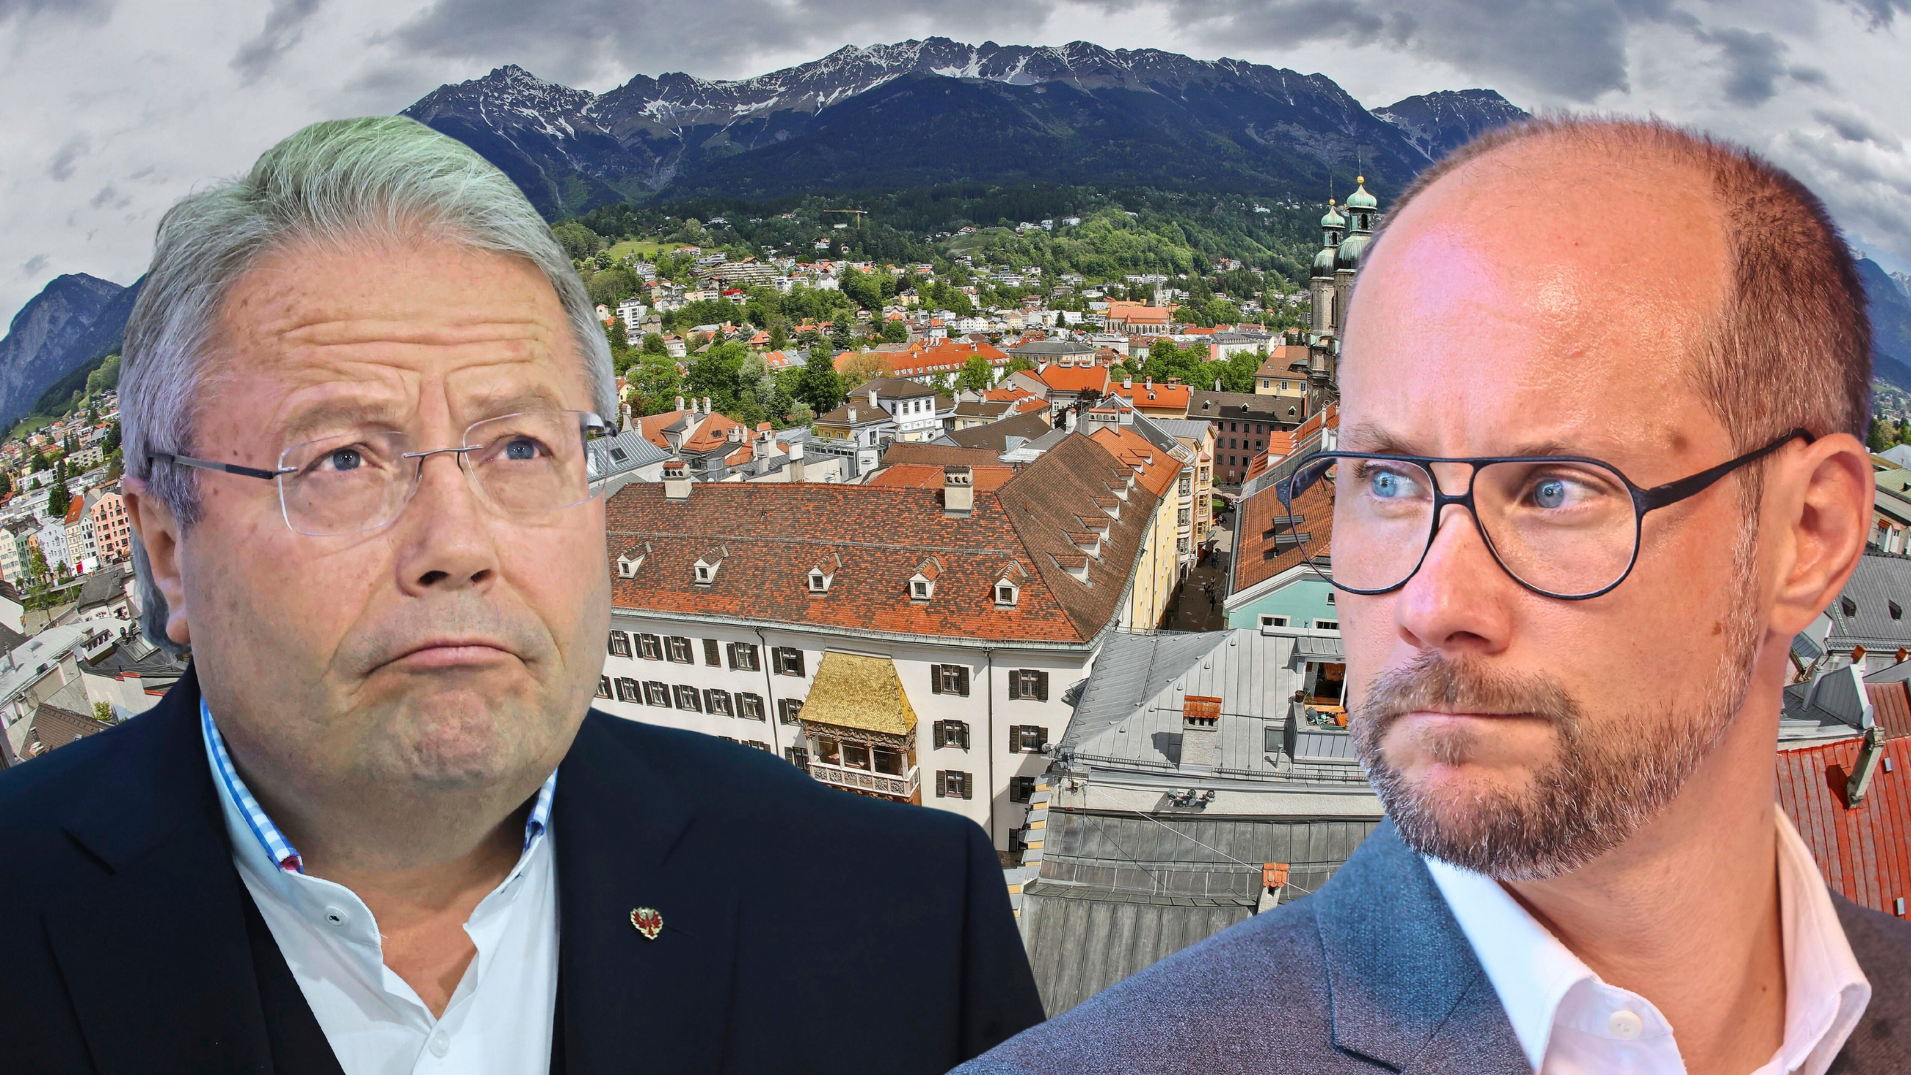 Ratlos, verärgert - aber nach außen hin ruhig - sowohl WB-Landesobmann Franz Hörl wie auch der Innsbrucker WB-Chef Mario Gerber sind alles andere als erfreut über den internen Kandidatenstreit. (Bild: Christof Birbaumer)